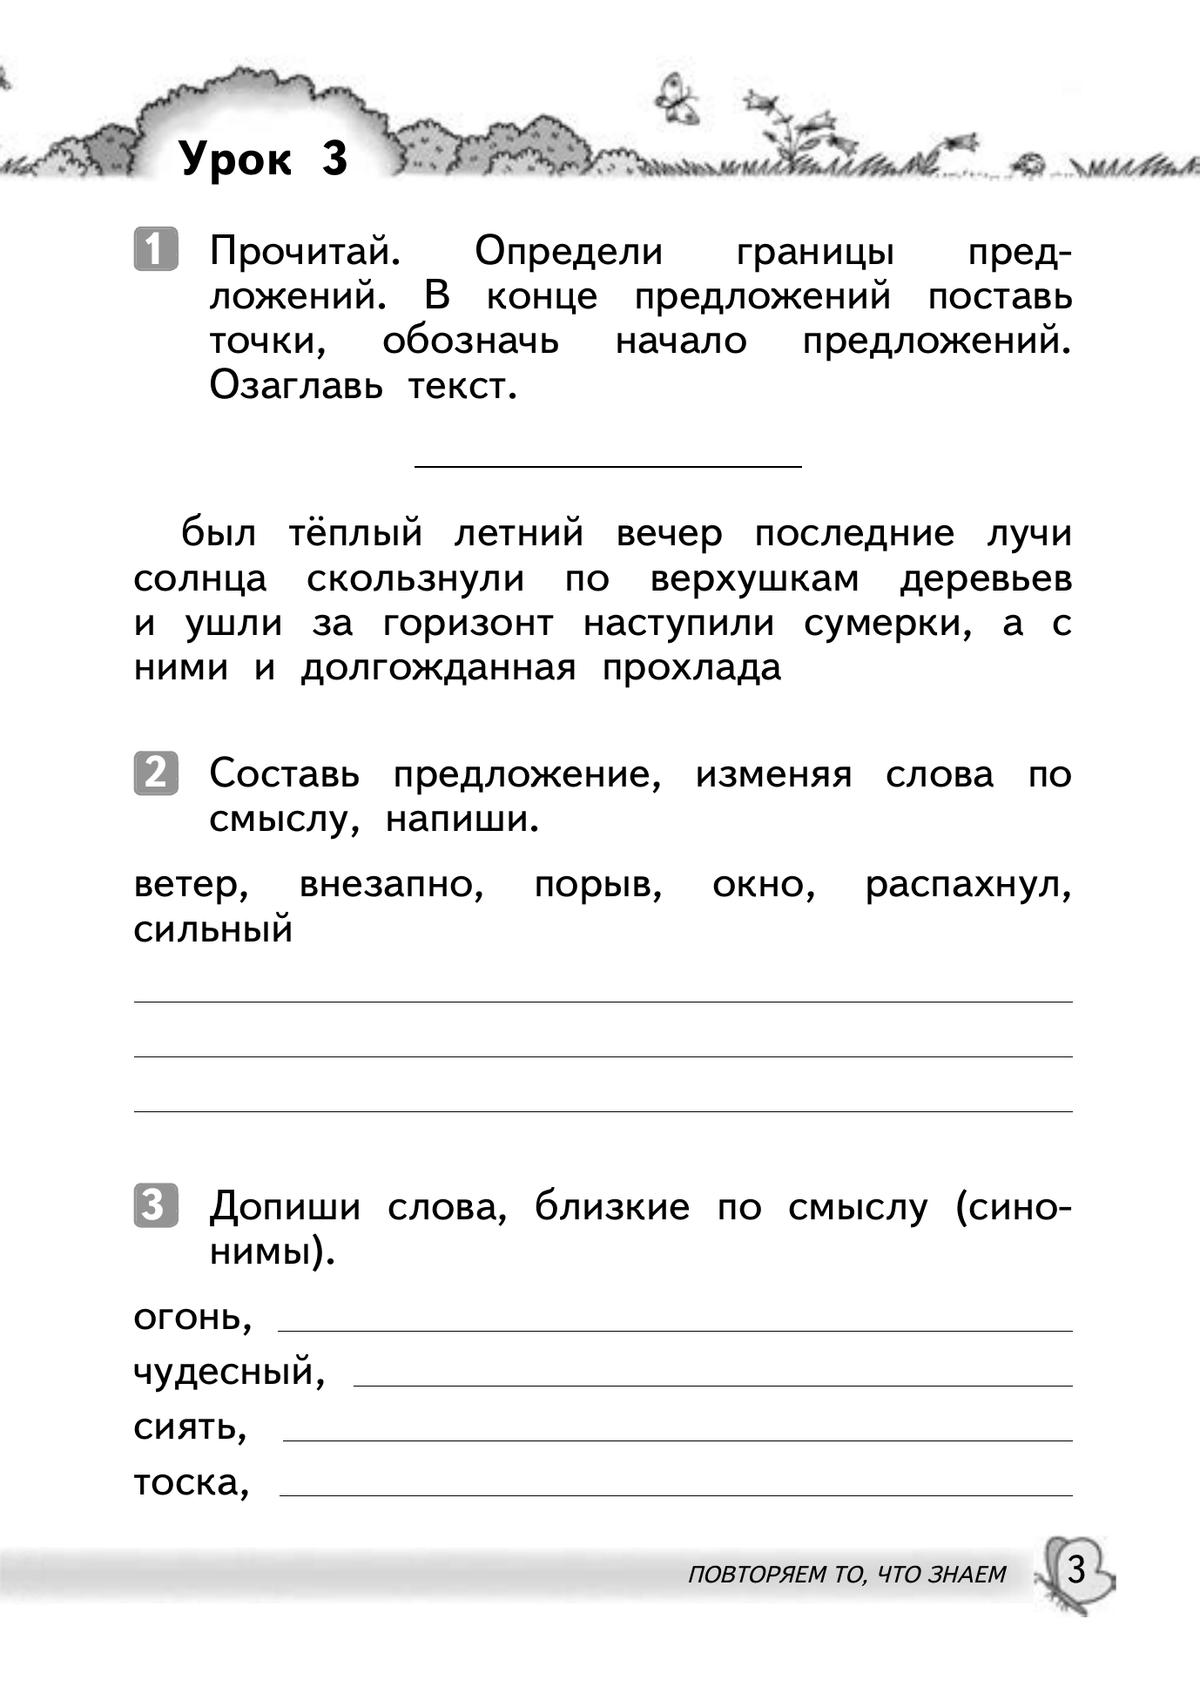 Русский язык. 2 класс. Развитие речи. Рабочая тетрадь 6